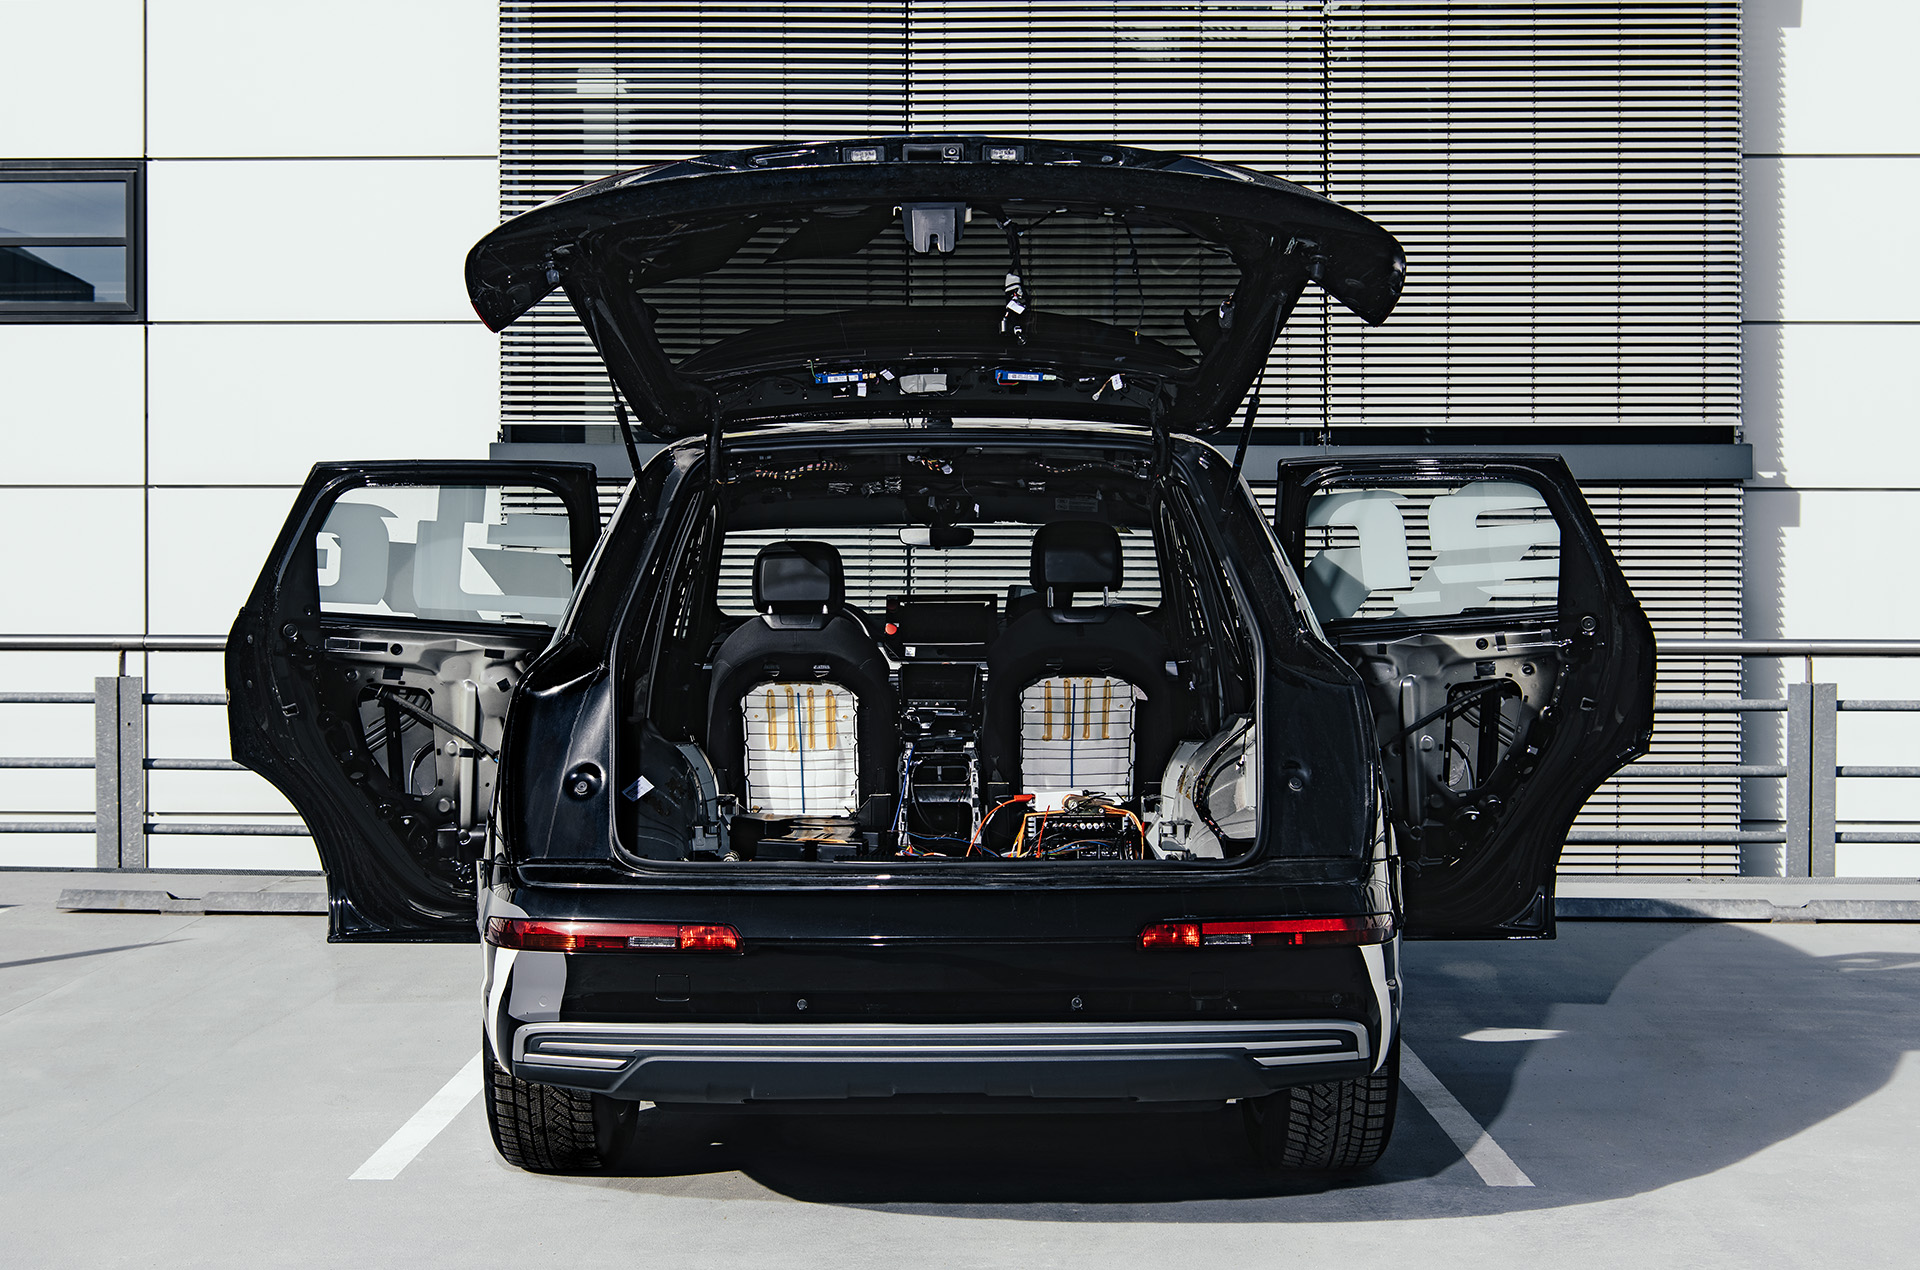 Een zicht vanaf de achterkant van de Brutus-conceptauto met de achterklep en zijdeuren open om de elektronica in de kofferbak en verwijderde binnenpanelen zichtbaar te maken.